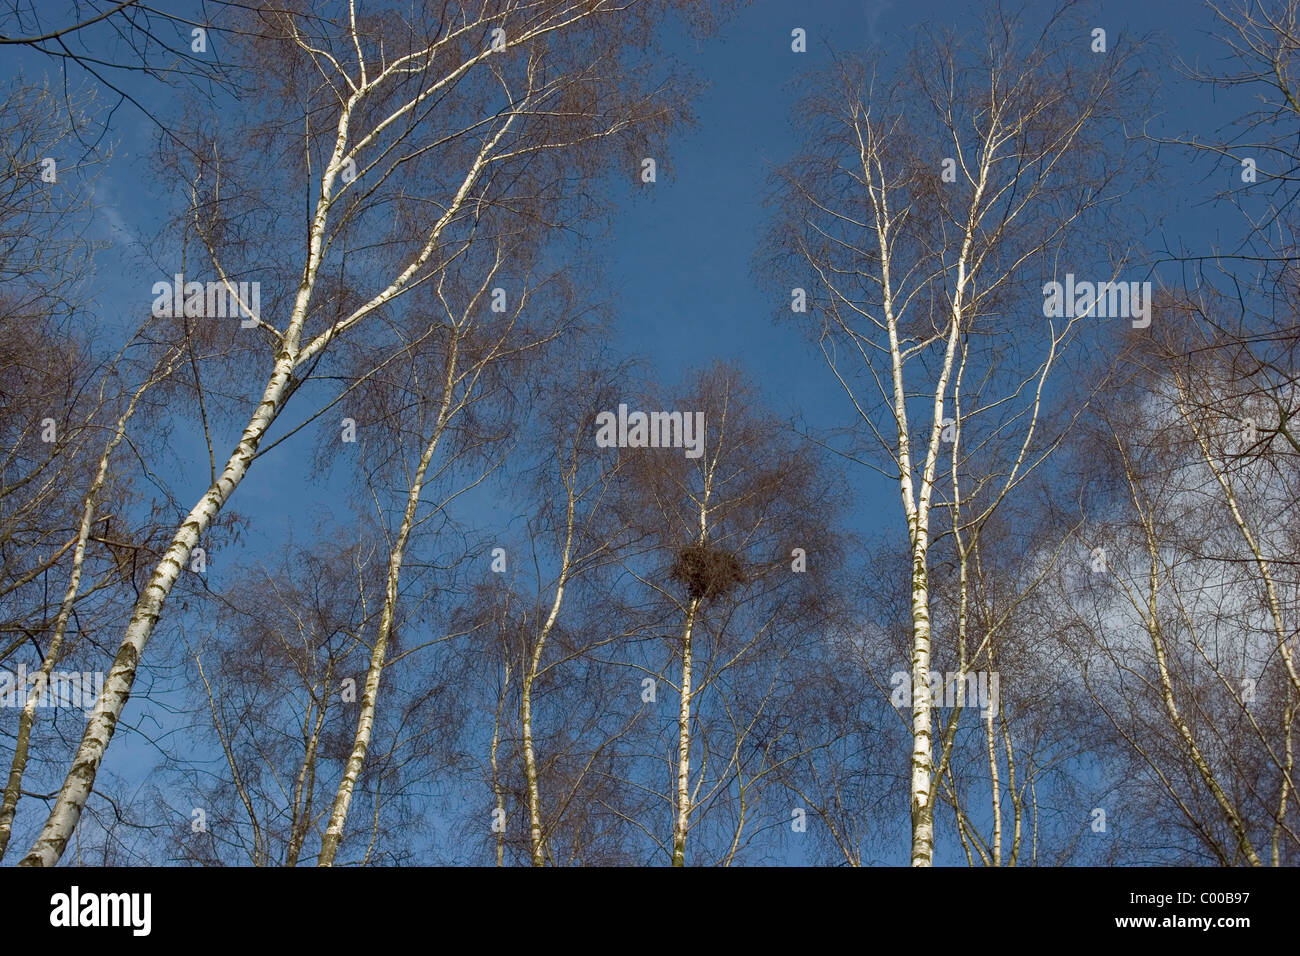 Birkenwald mit Nest eines Maeusebussardes, Betula, Birch forest with nest of a Common Buzzard Stock Photo